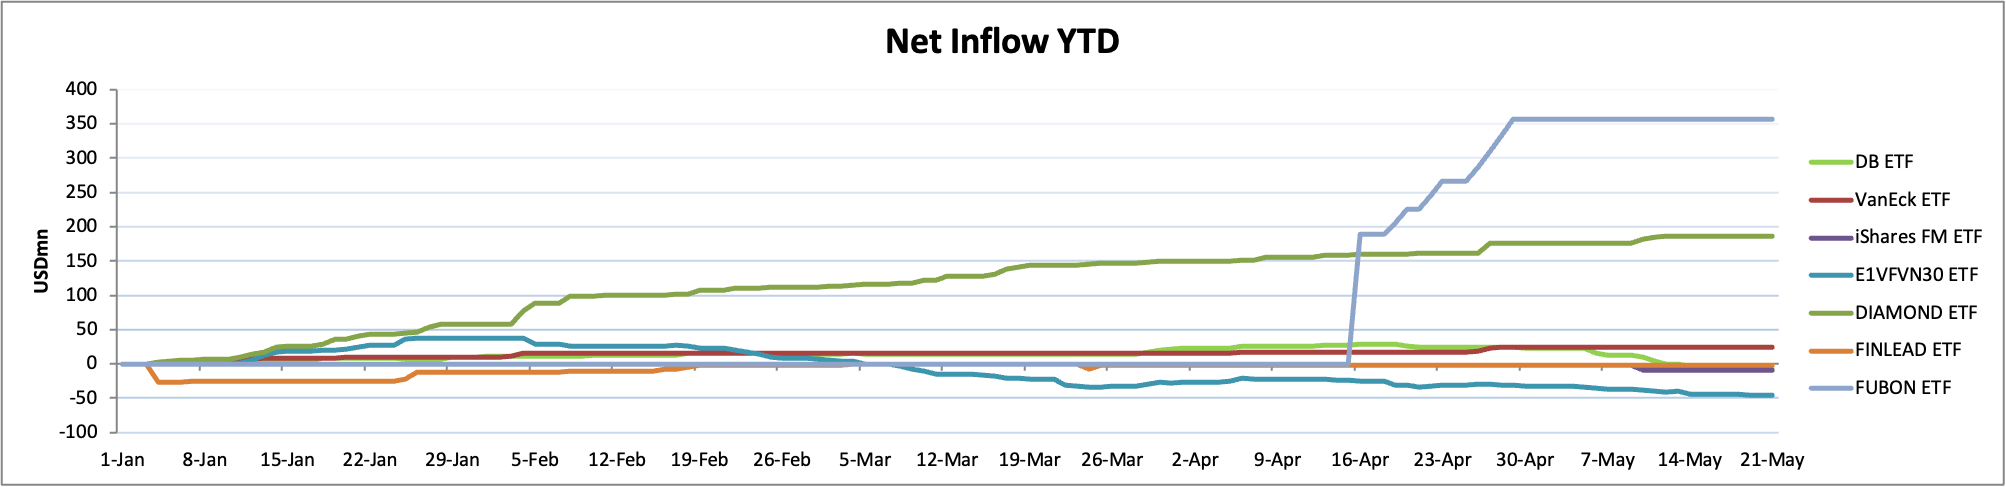 VCSC: Khối ngoại vẫn tiếp tục bán ròng nhưng tín hiệu tích cực đến từ các quỹ ETF - Ảnh 2.